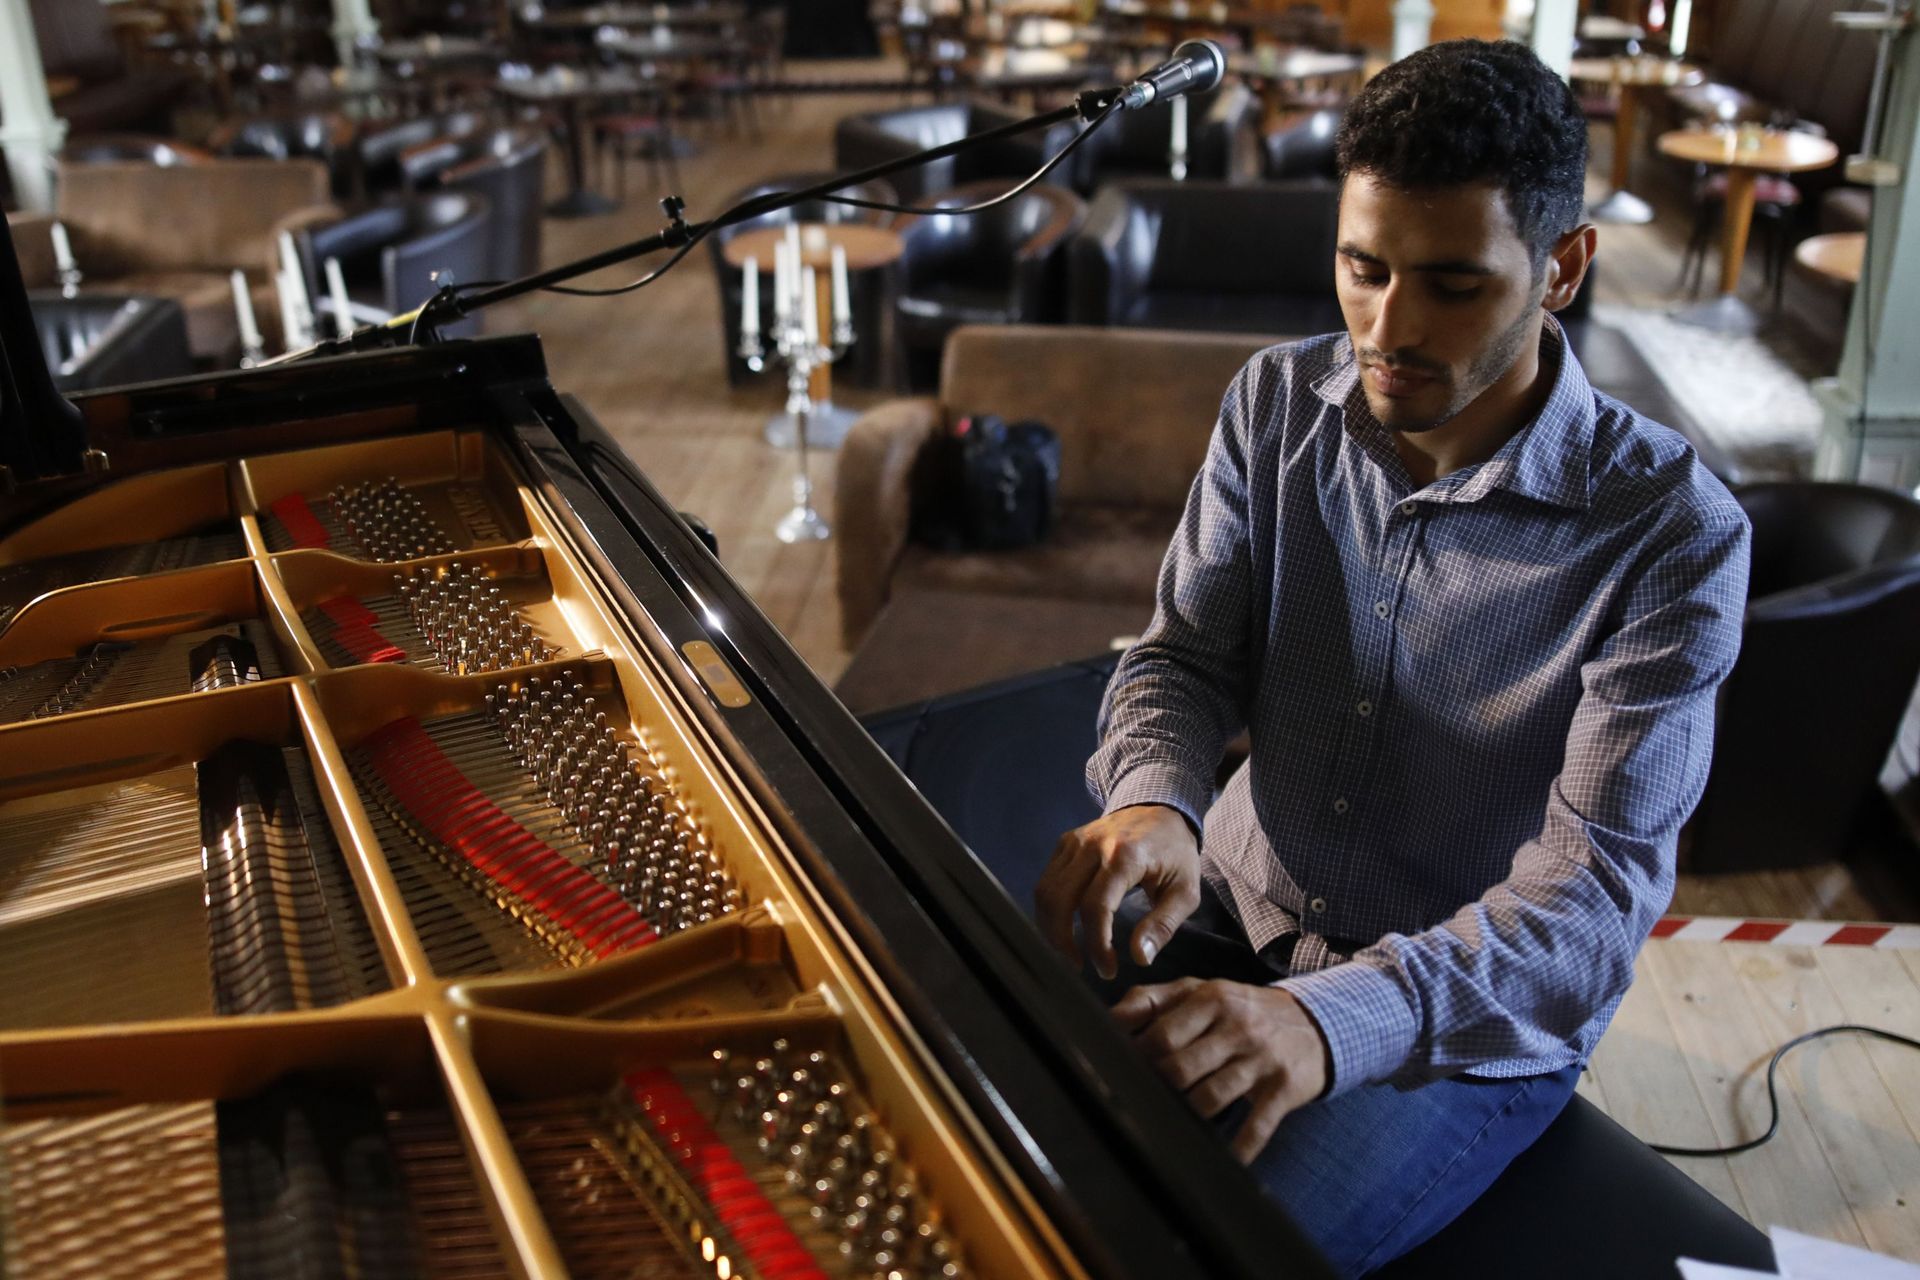 
Aeham Ahmad, pianiste syrien et réfugié du camp de réfugiés de Yarmouk à Damas, répète avant un concert le 30 août 2020 dans le centre culturel `` One World '' à Reinstorf près de Lunebourg, dans le nord de l'Allemagne